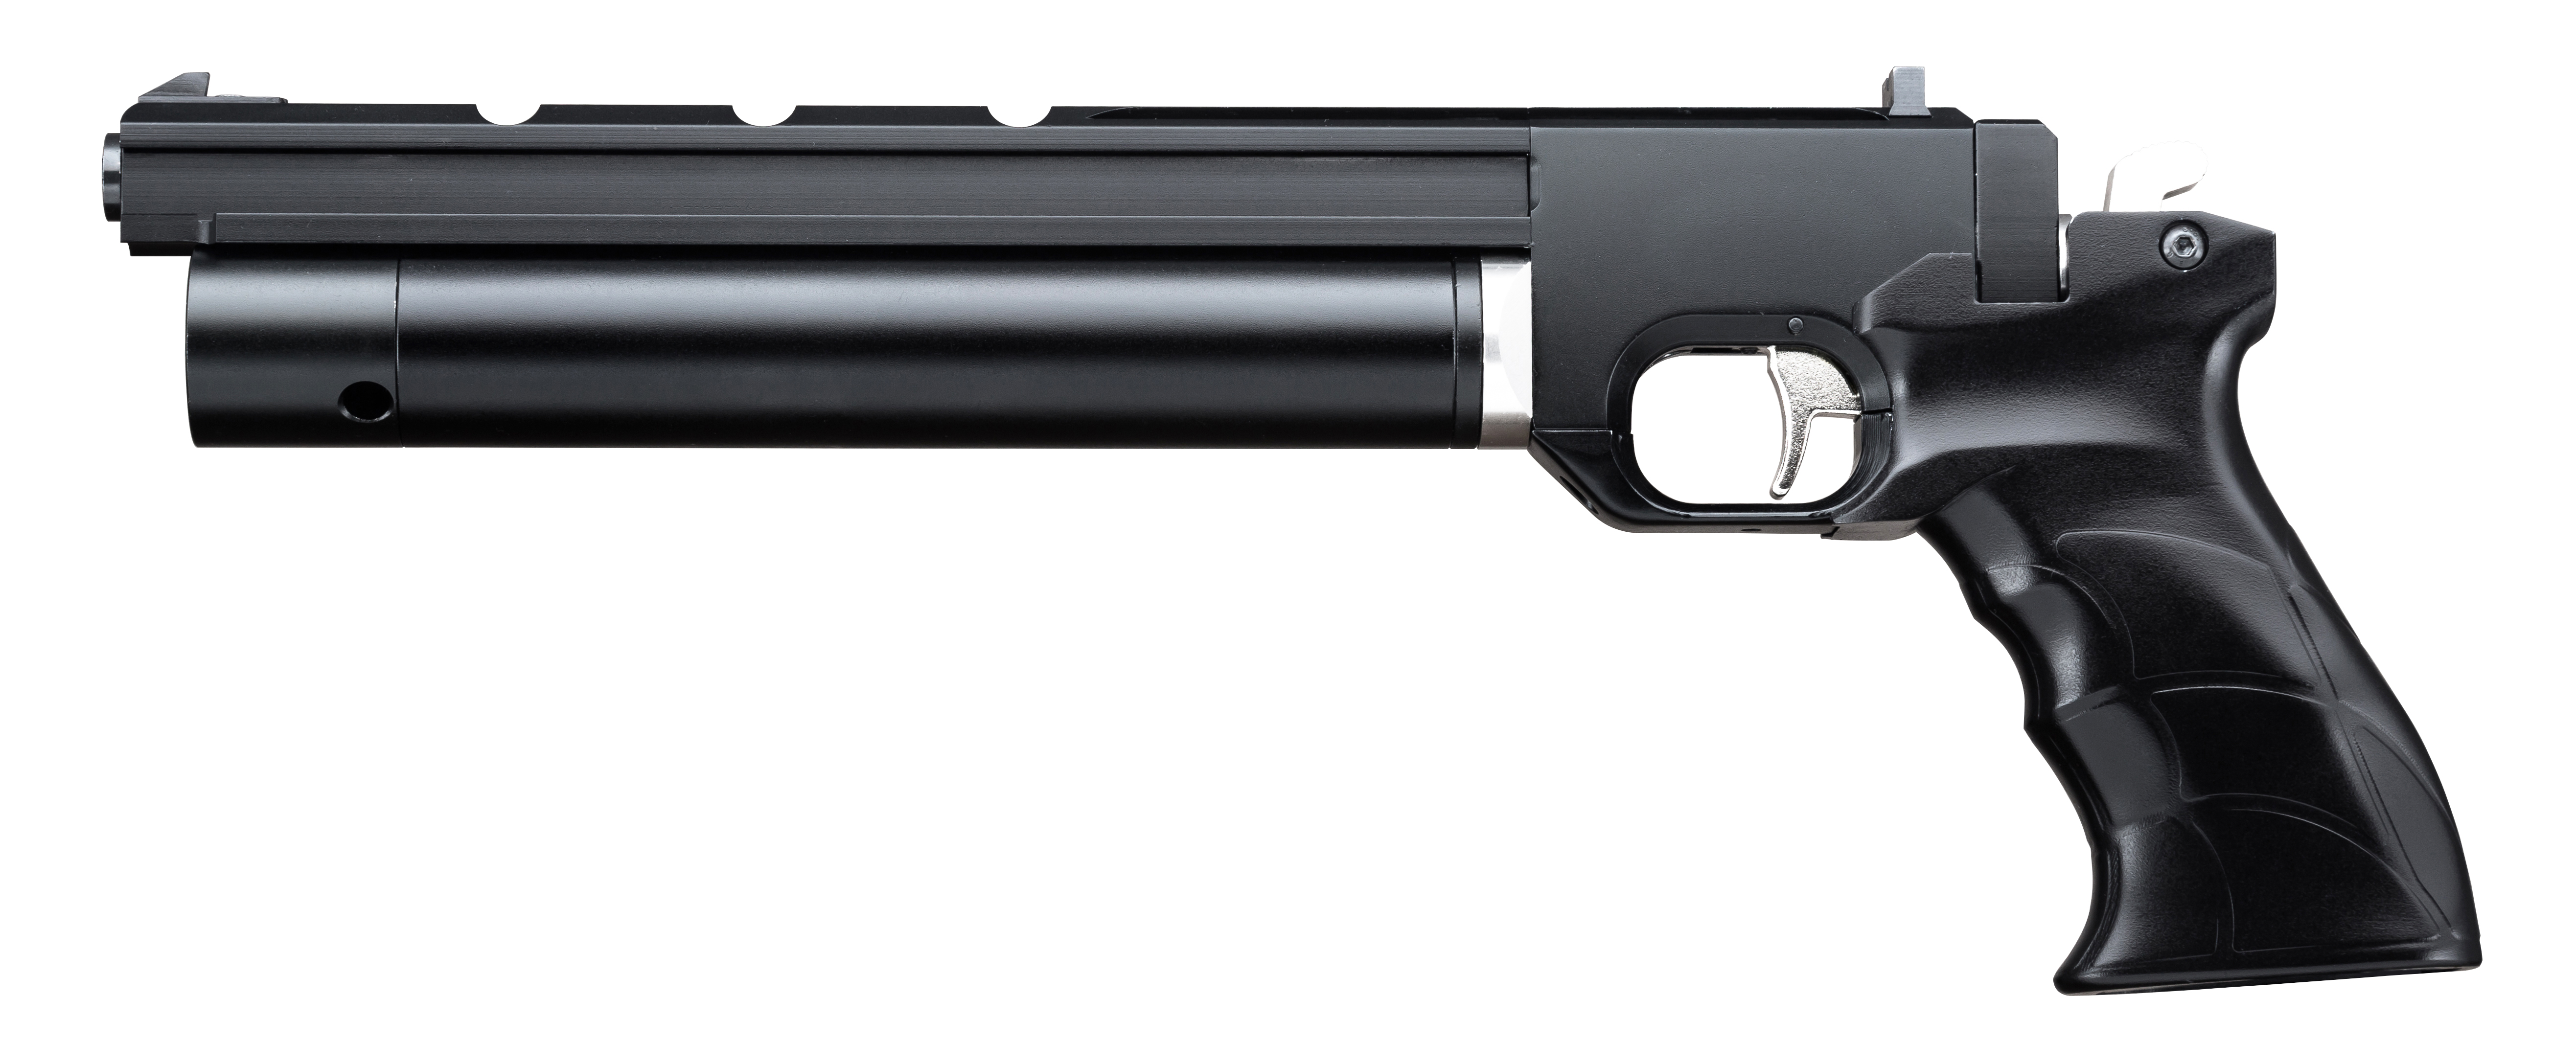 Billede af Artemis PP700S-A PCP luftpistol, 4,5mm